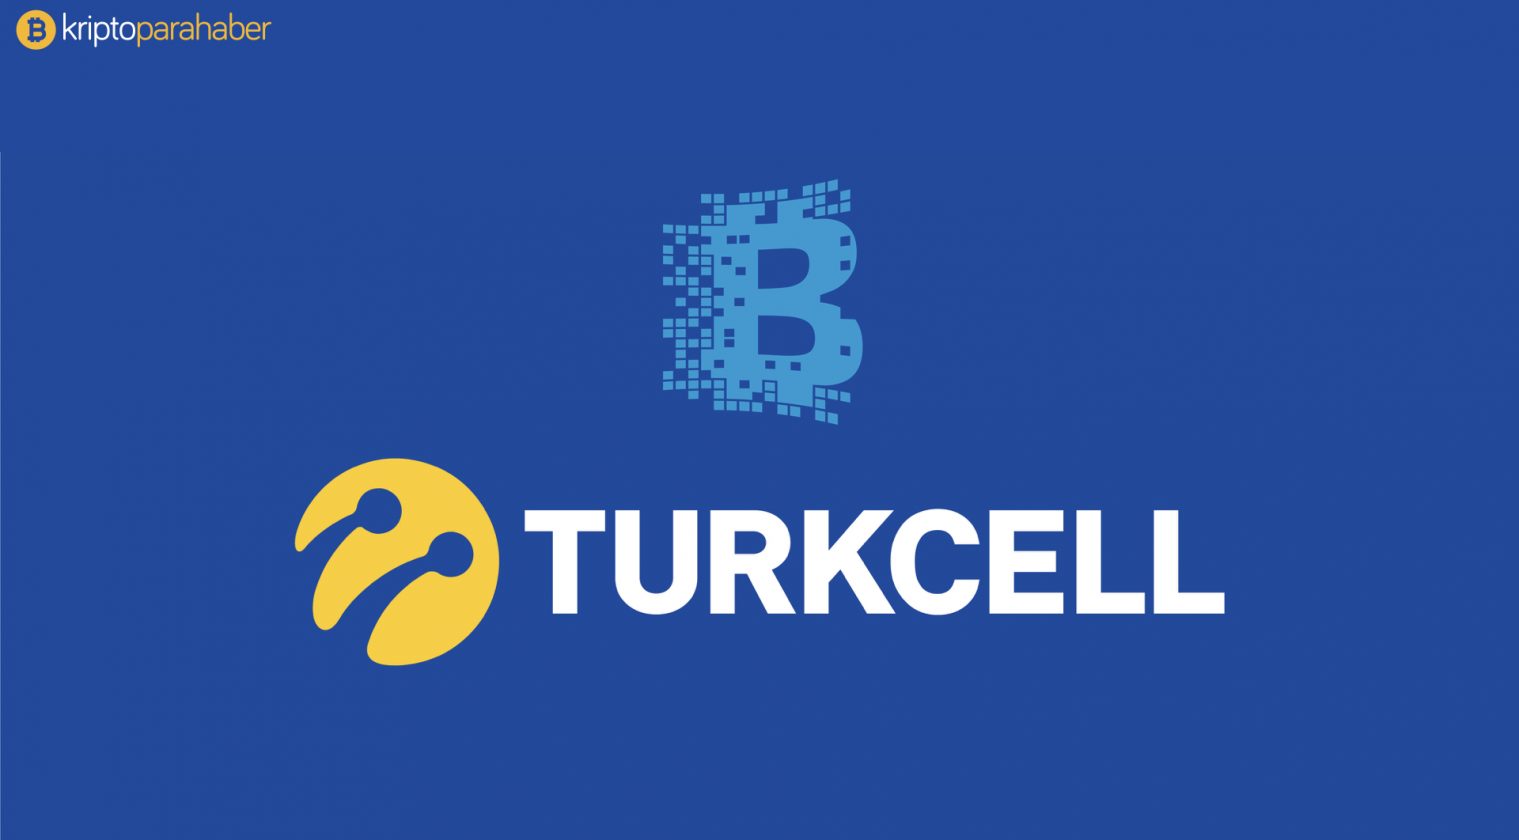 Turkcell Blockchain dünyasına giriş yapıyor.